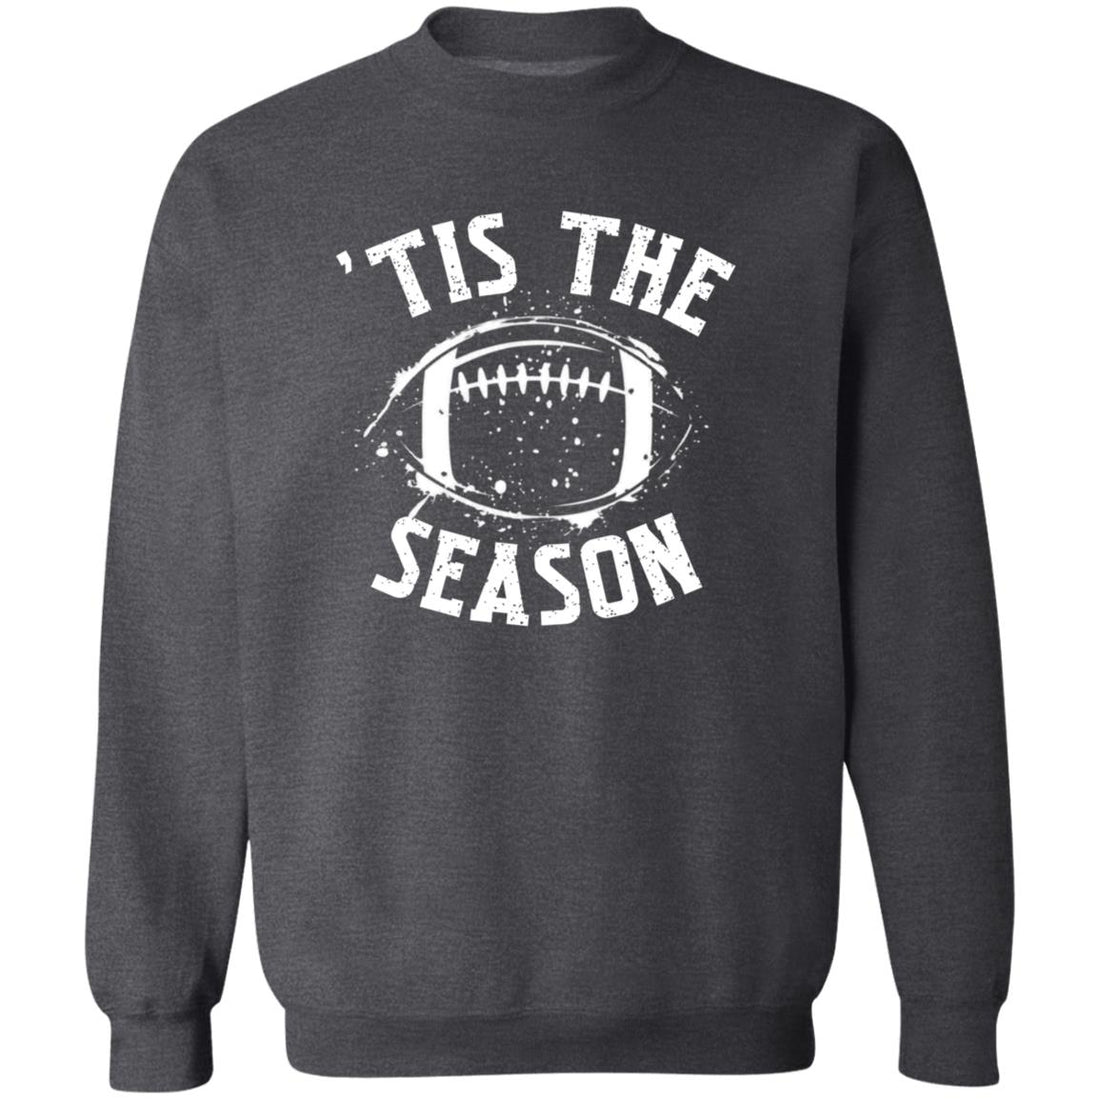 Tis The Season Football Crewneck Pullover Sweatshirt - Sweatshirts - Positively Sassy - Tis The Season Football Crewneck Pullover Sweatshirt